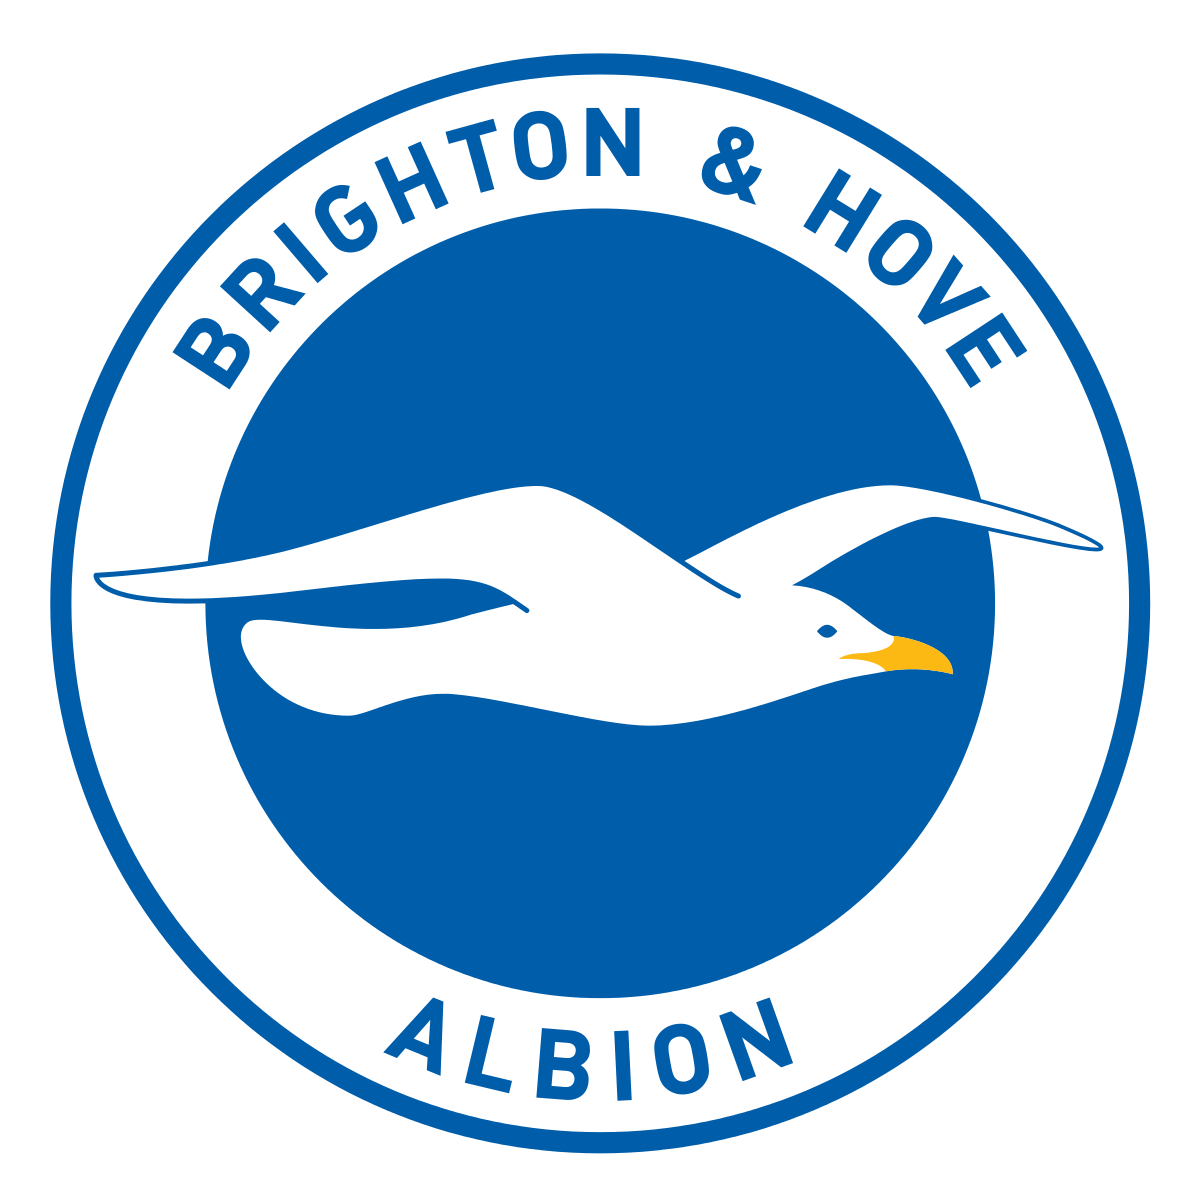 Brighton Logo - Brighton & Hove Albion F.C.